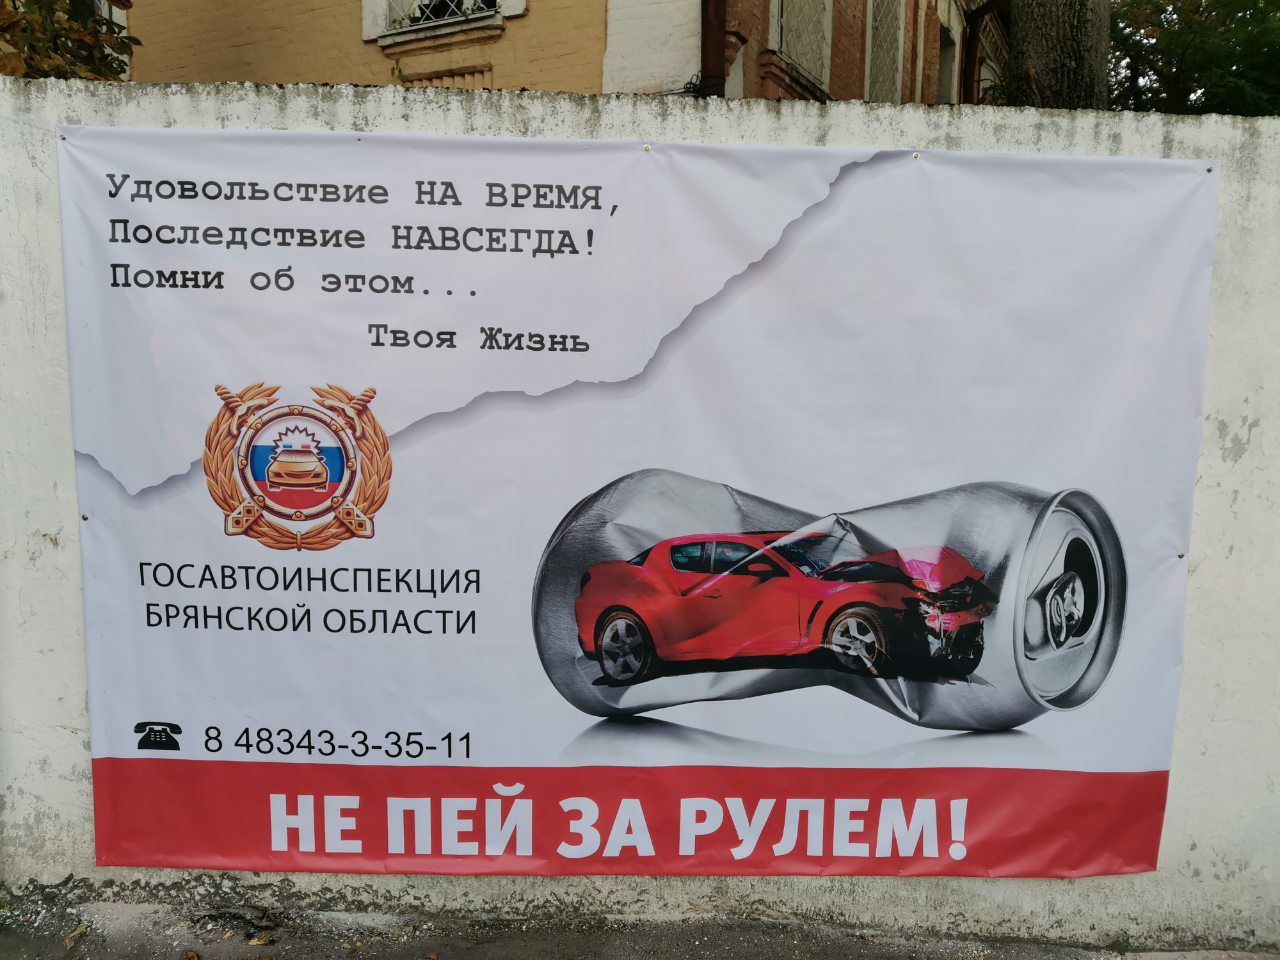 Новозыбковцы призвали к соблюдению правил дорожной безопасности